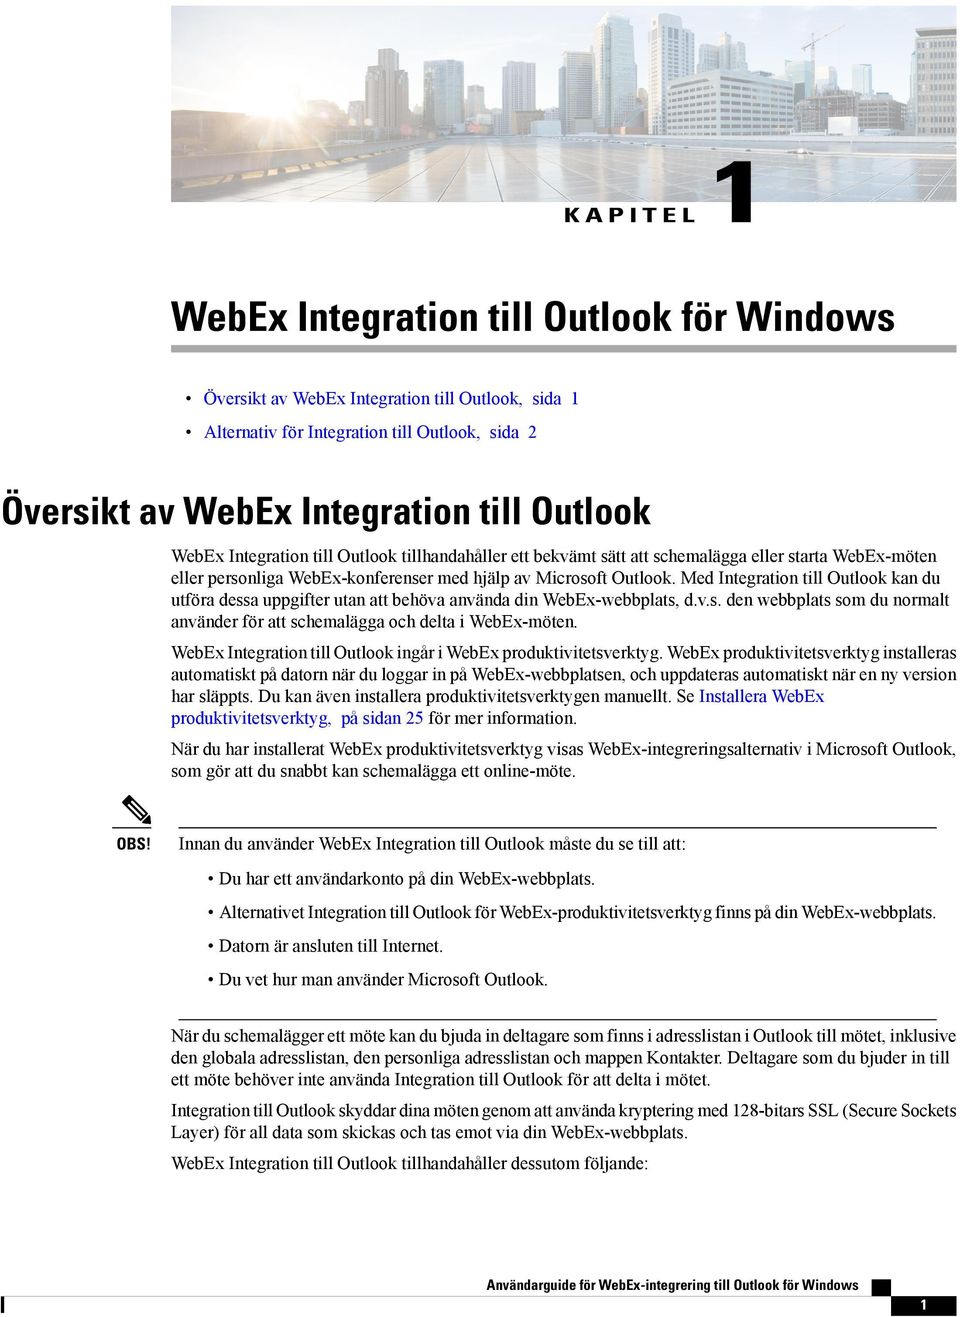 Med Integration till Outlook kan du utföra dessa uppgifter utan att behöva använda din WebEx-webbplats, d.v.s. den webbplats som du normalt använder för att schemalägga och delta i WebEx-möten.